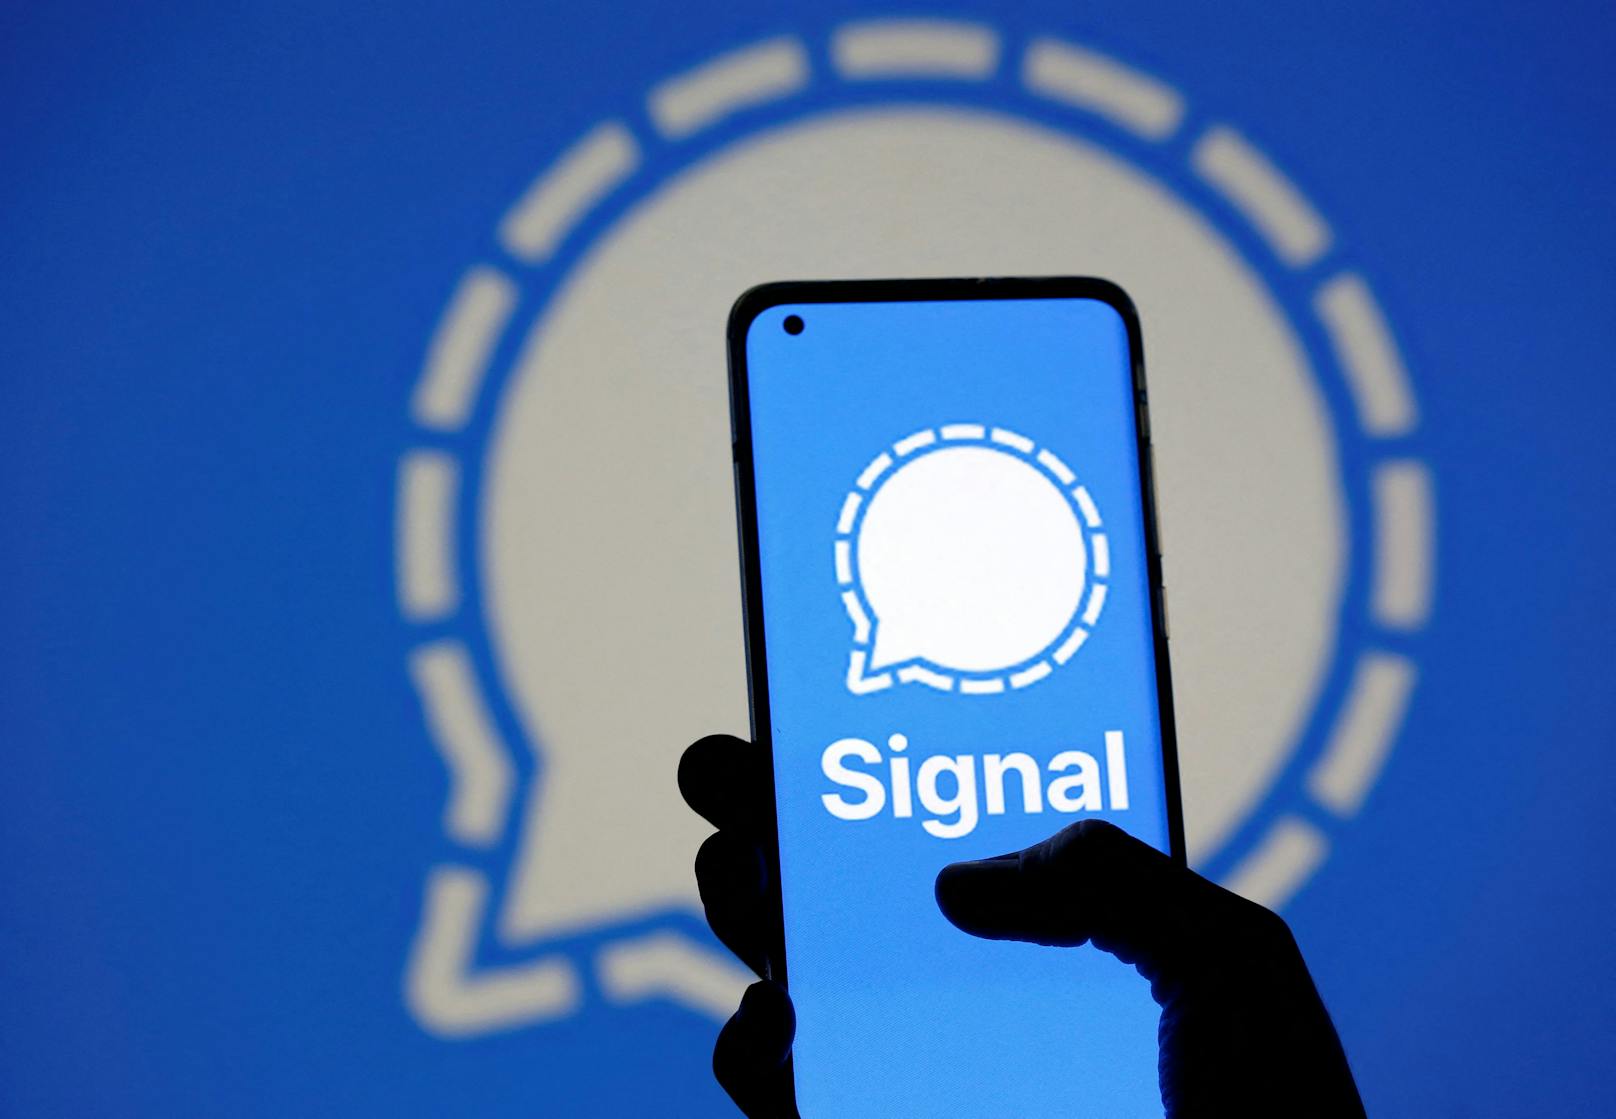 Signal stellte nun klar, dass die Nutzung von Signal "weiterhin sicher ist und Signal weder gehackt wurde, noch angegriffen wird".